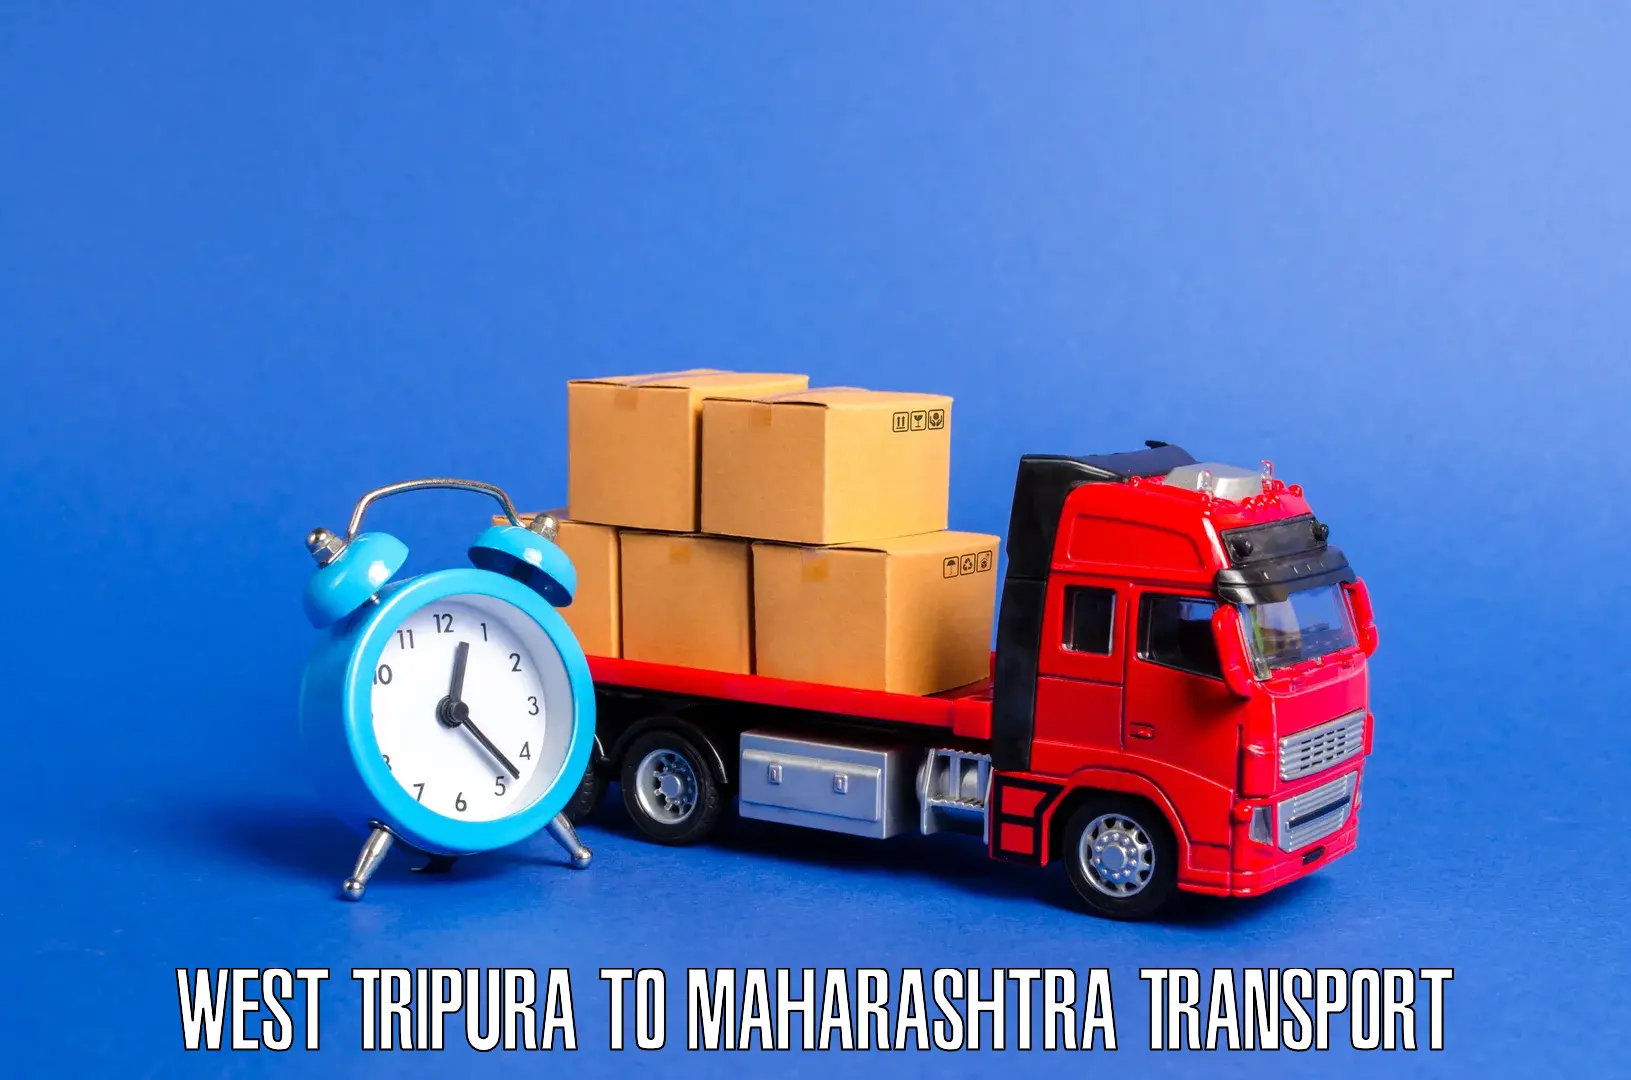 Daily transport service West Tripura to Brahmapuri